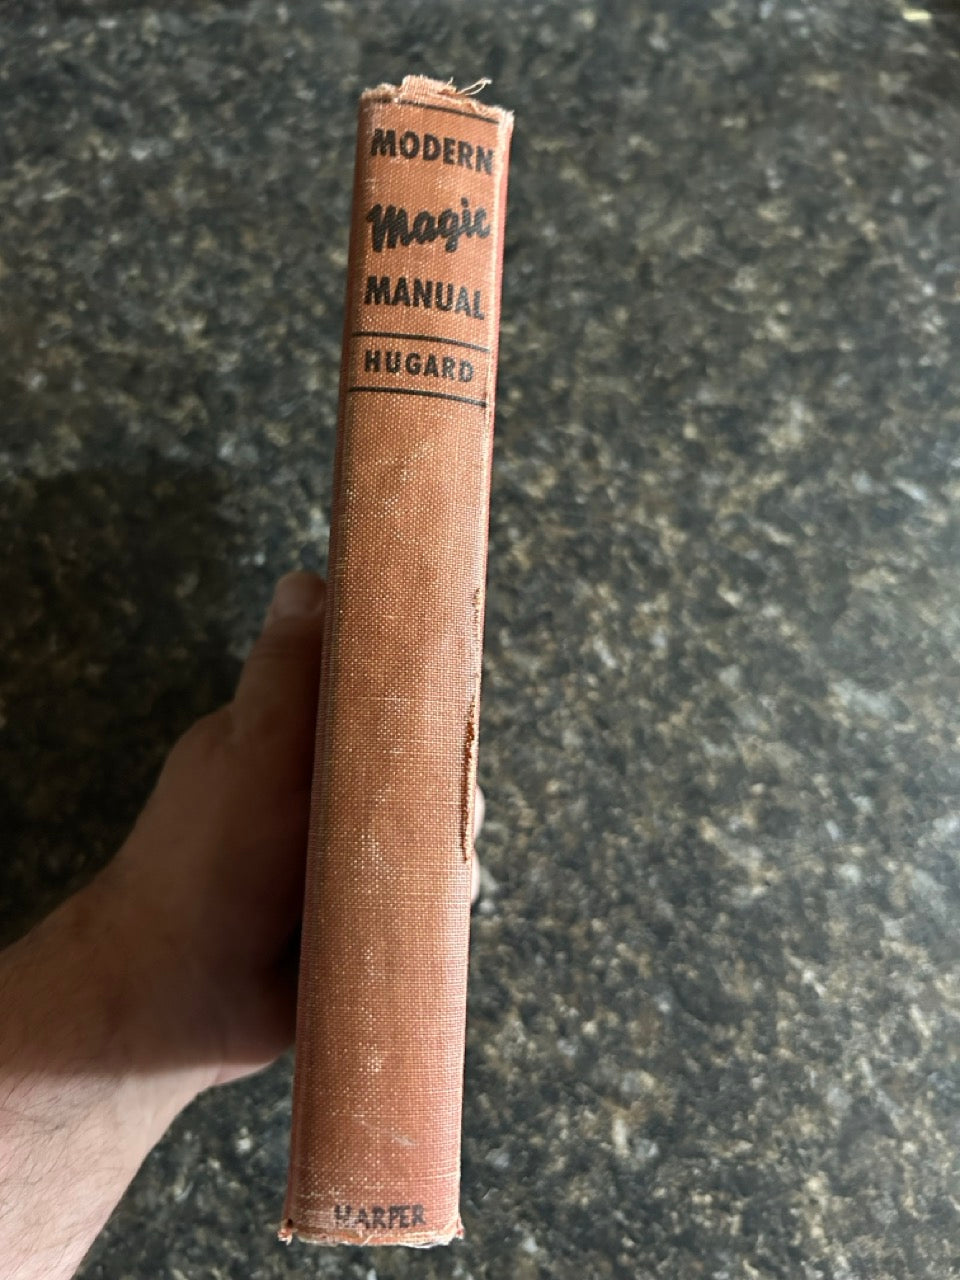 Modern Magic Manual - Jean Hugard (USED)